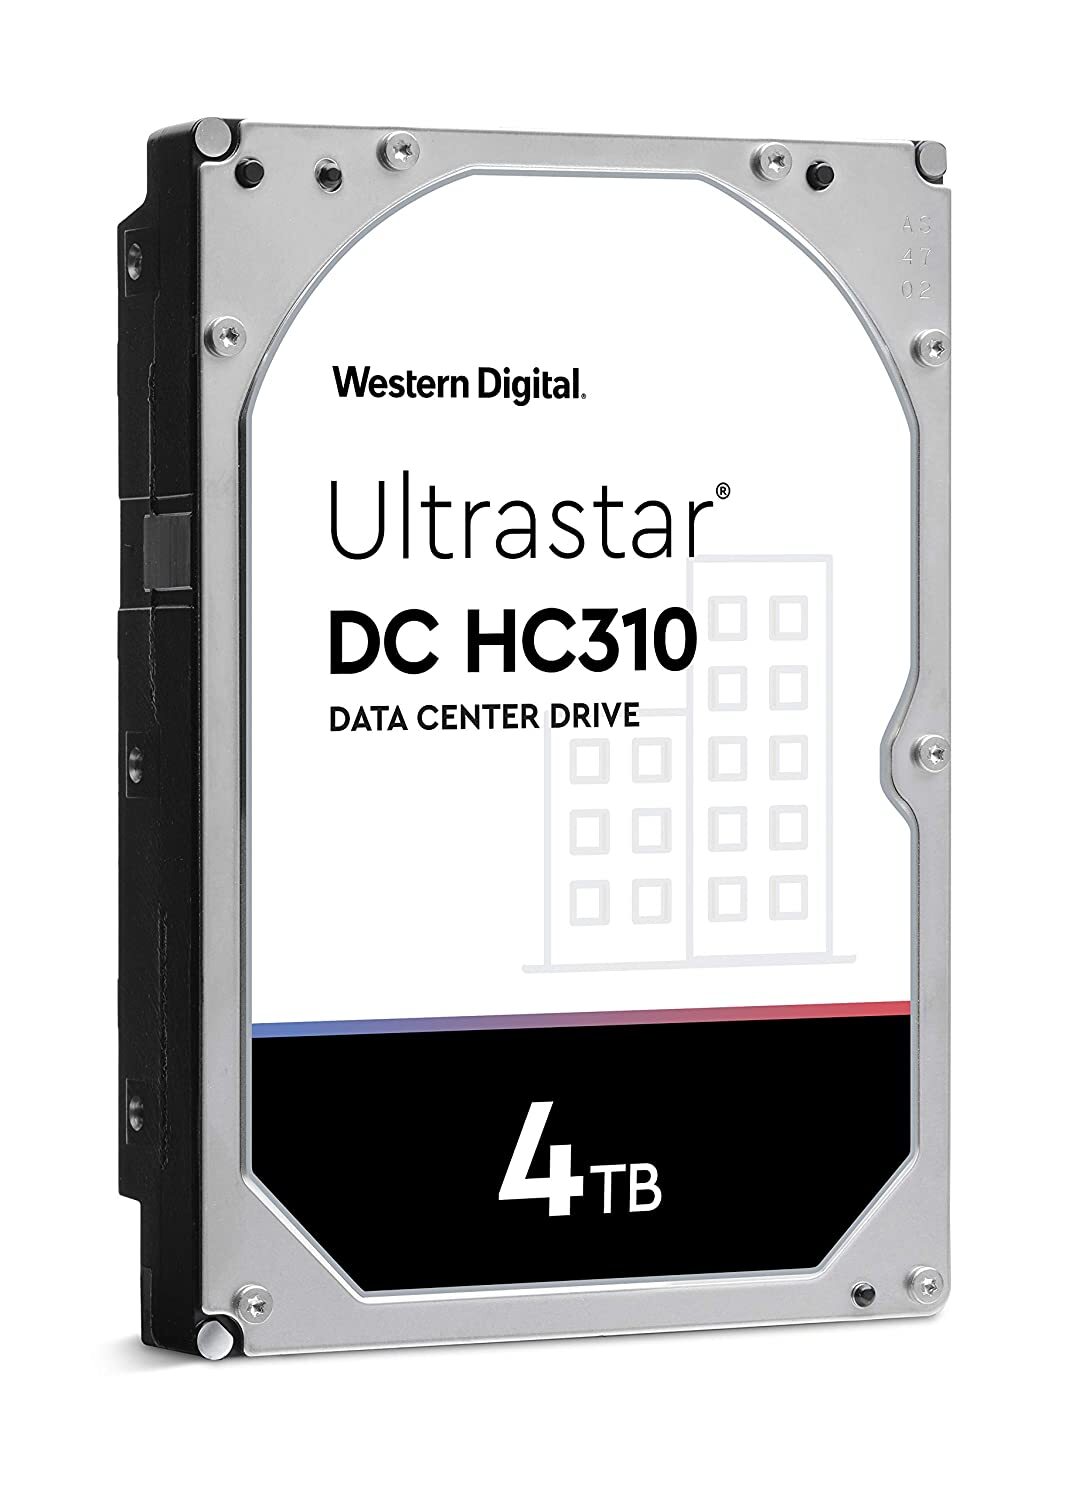 Western Digital 4TB Ultrastar DC HC310 SATA HDD - 7200 RPM Class, SATA 6 Gb/s, 256MB Cache, 3.5"